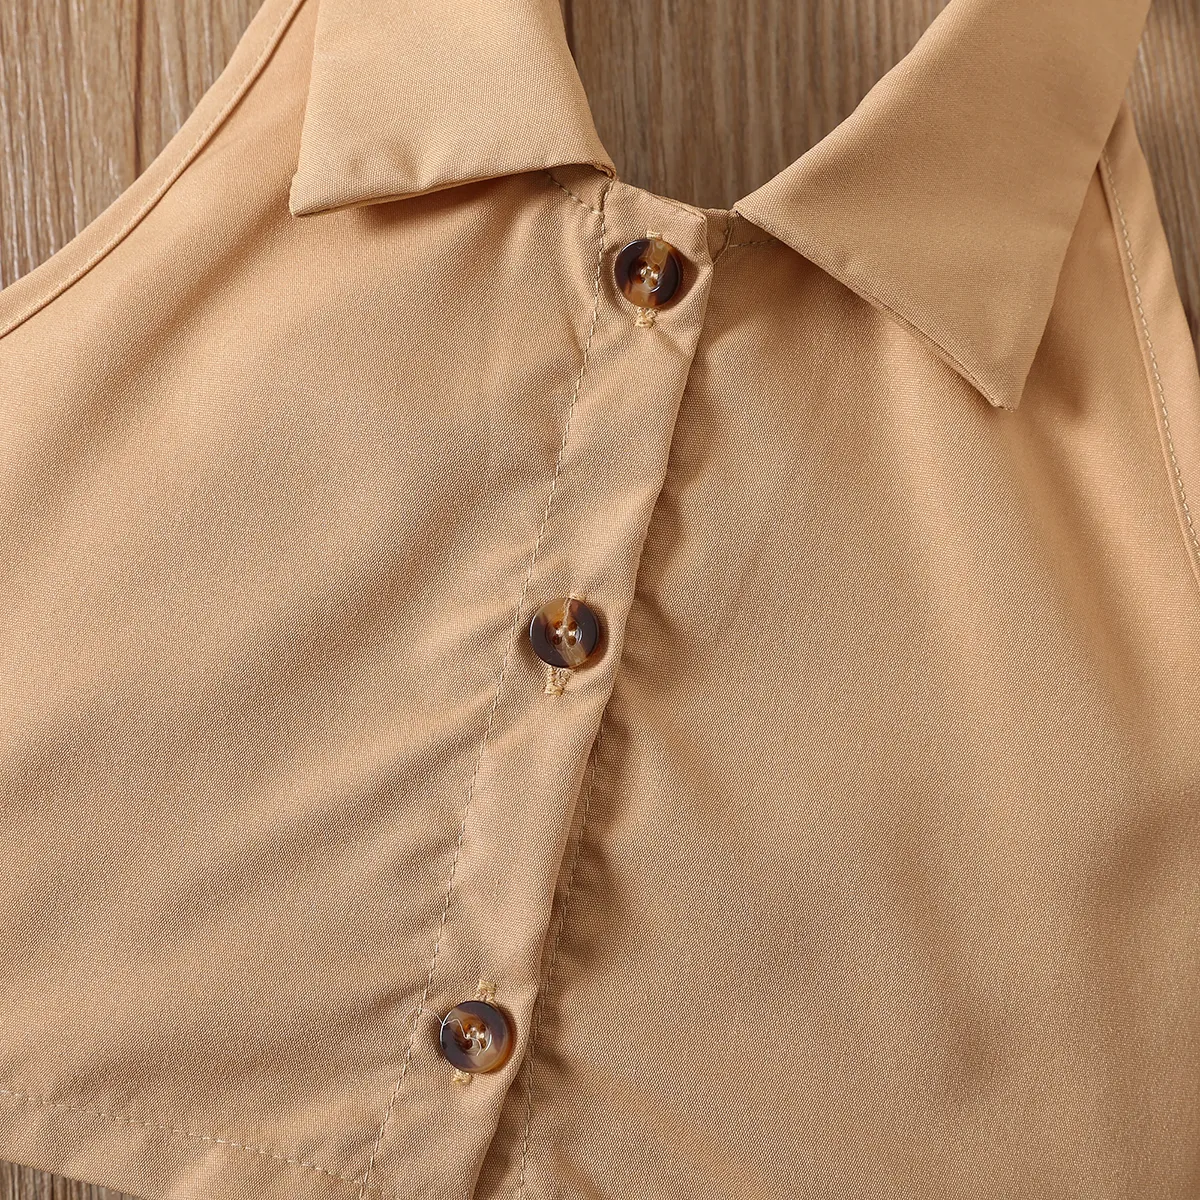 Girls' 2pcs Brown Halter Short Skirt Set - Avant-garde Style Khaki big image 1